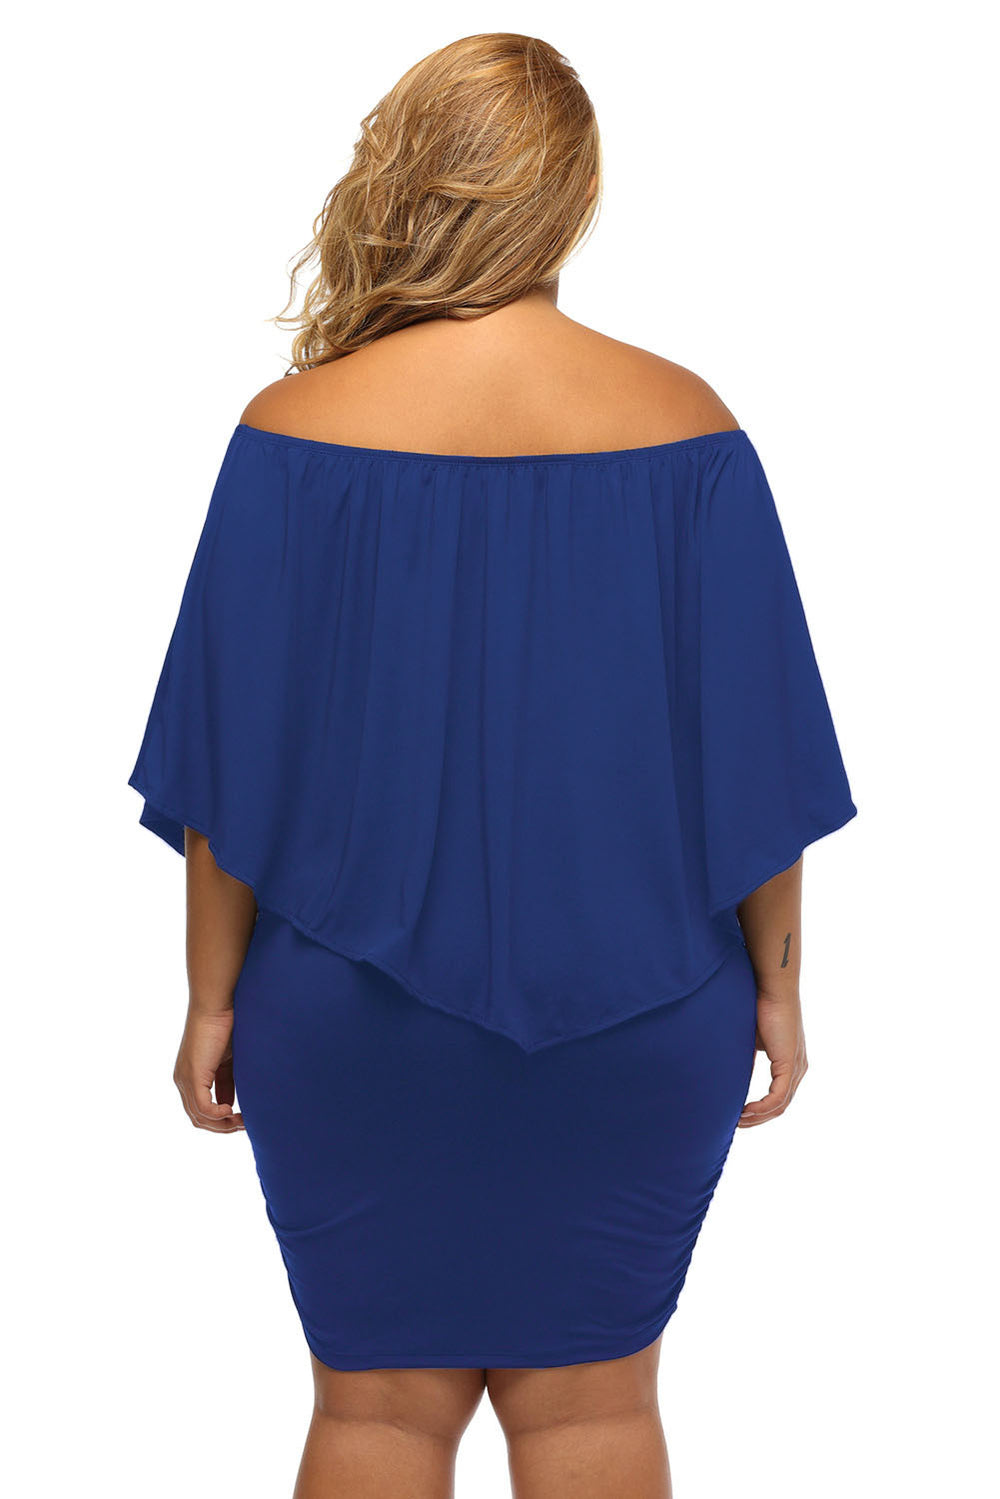 Multi-way Layered Ruffle Blue Plus Size Mini Dress